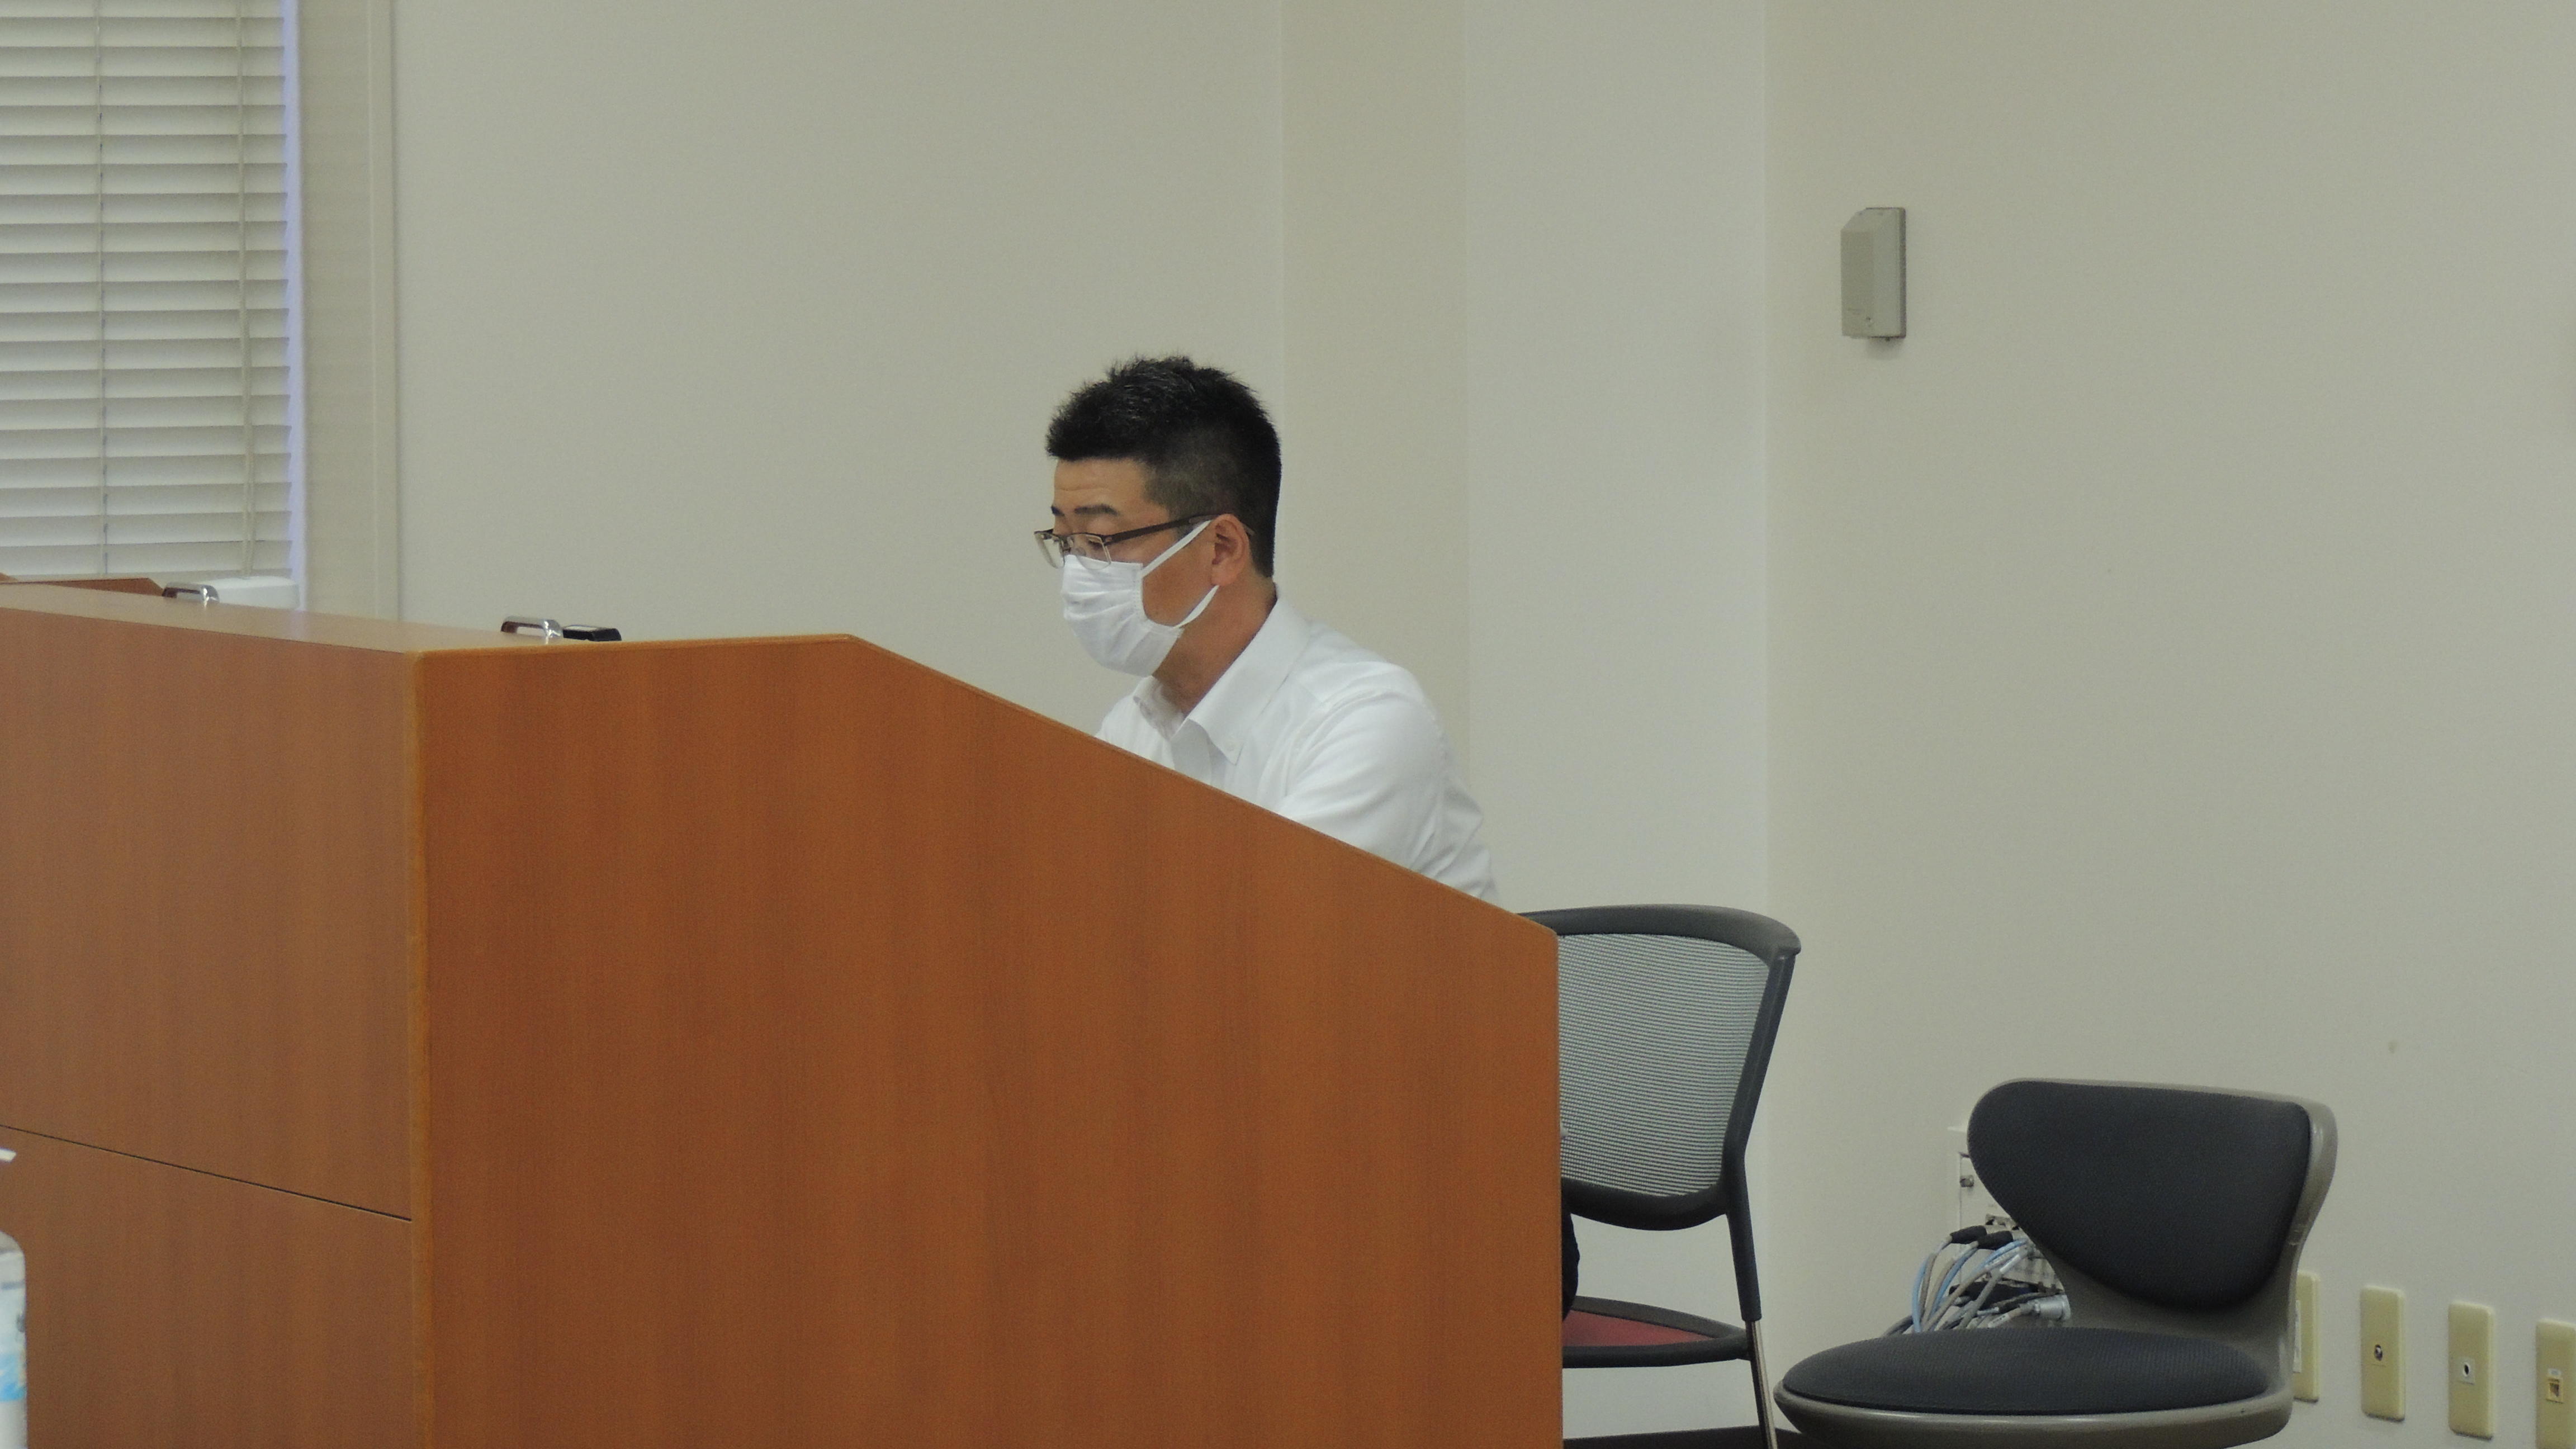 6月16日 第2回経済学部定例講演会が開催されました Event 近畿大学 経済学部 大学院 経済学研究科